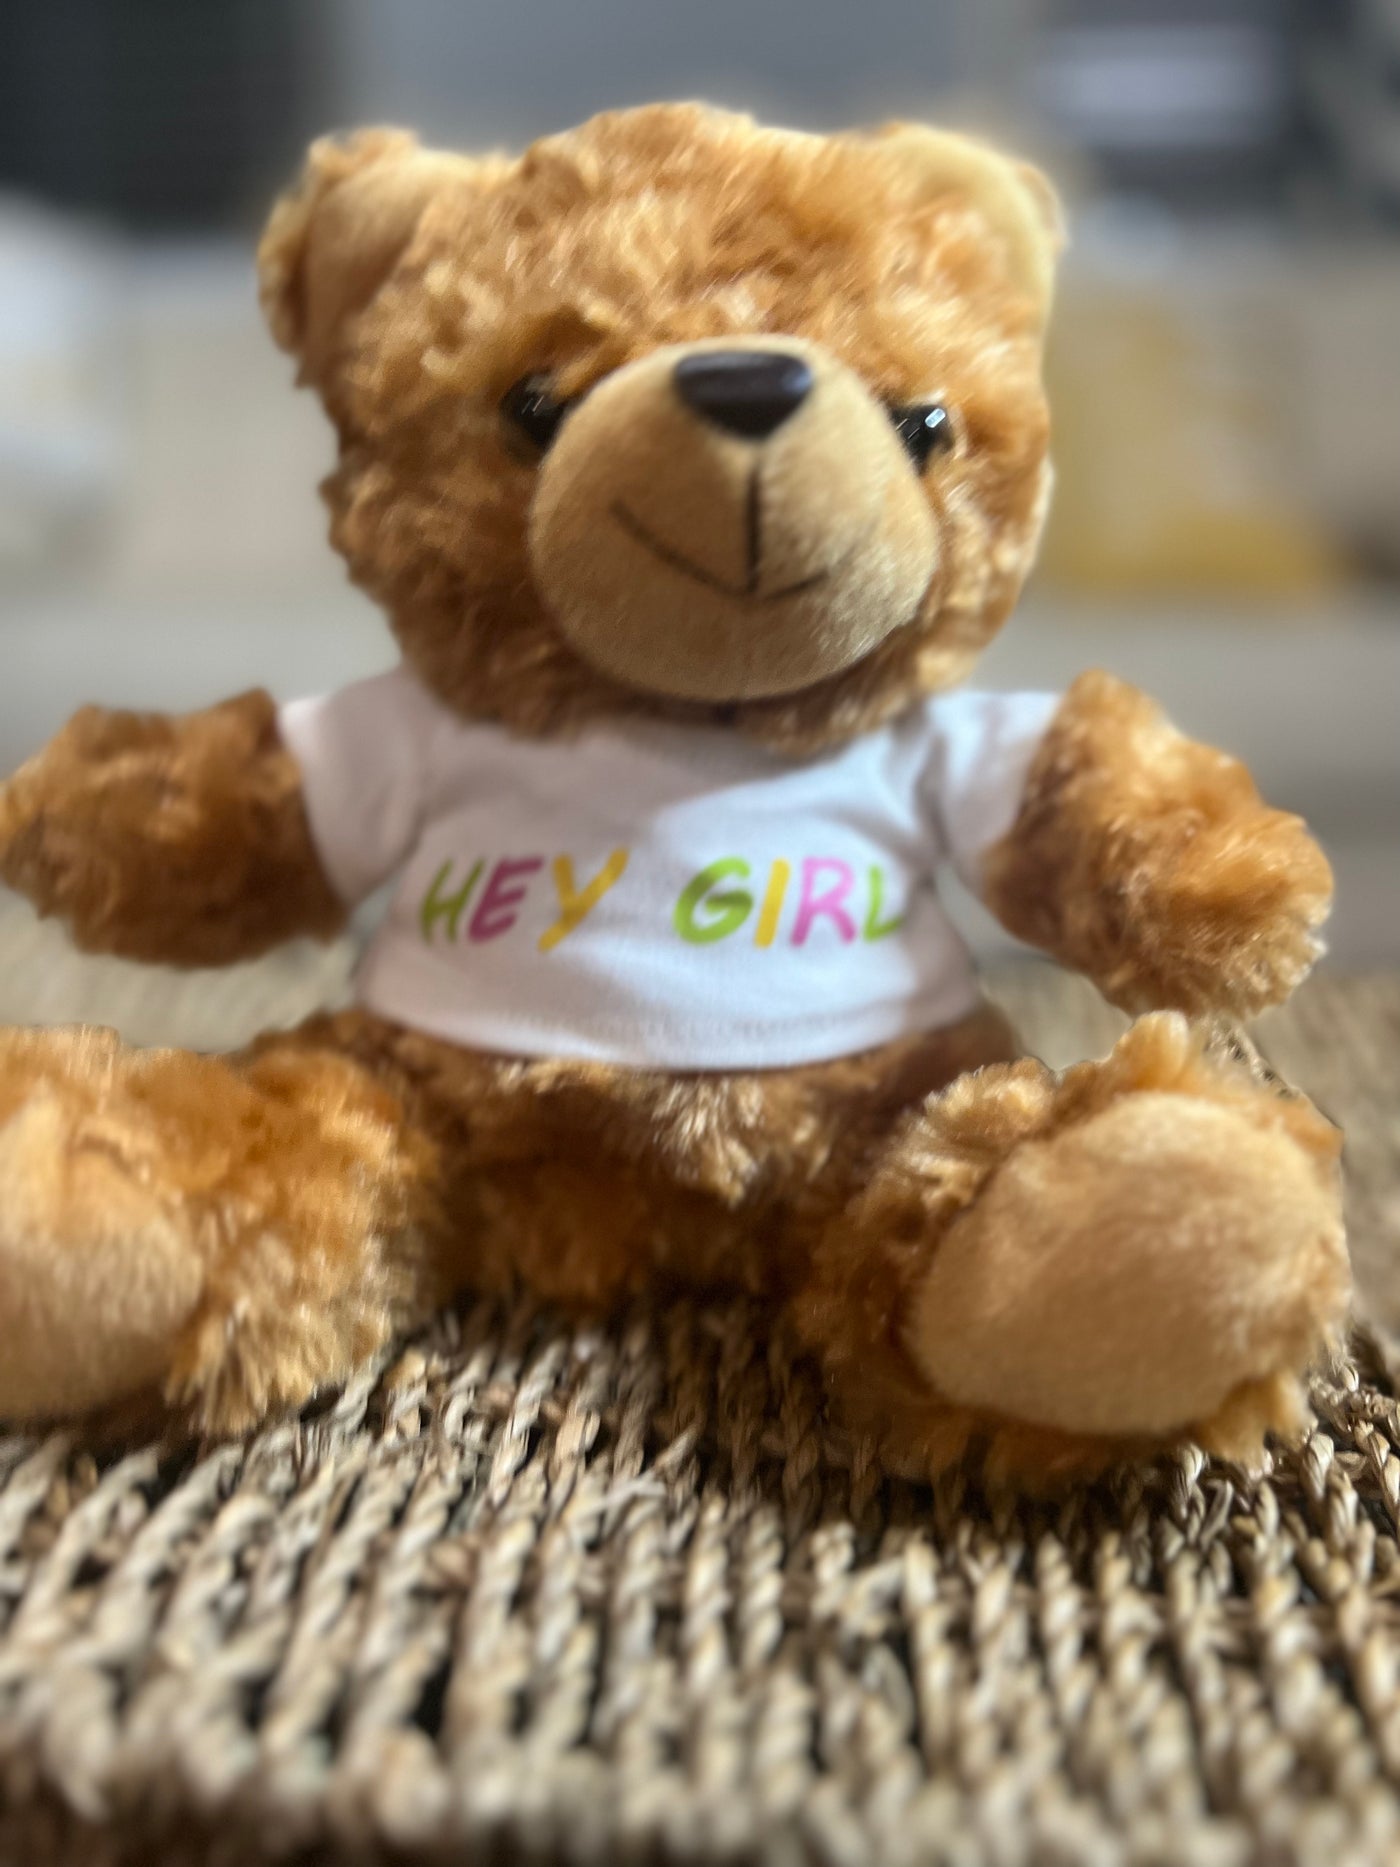 "Hey Girl" Teddy Bear